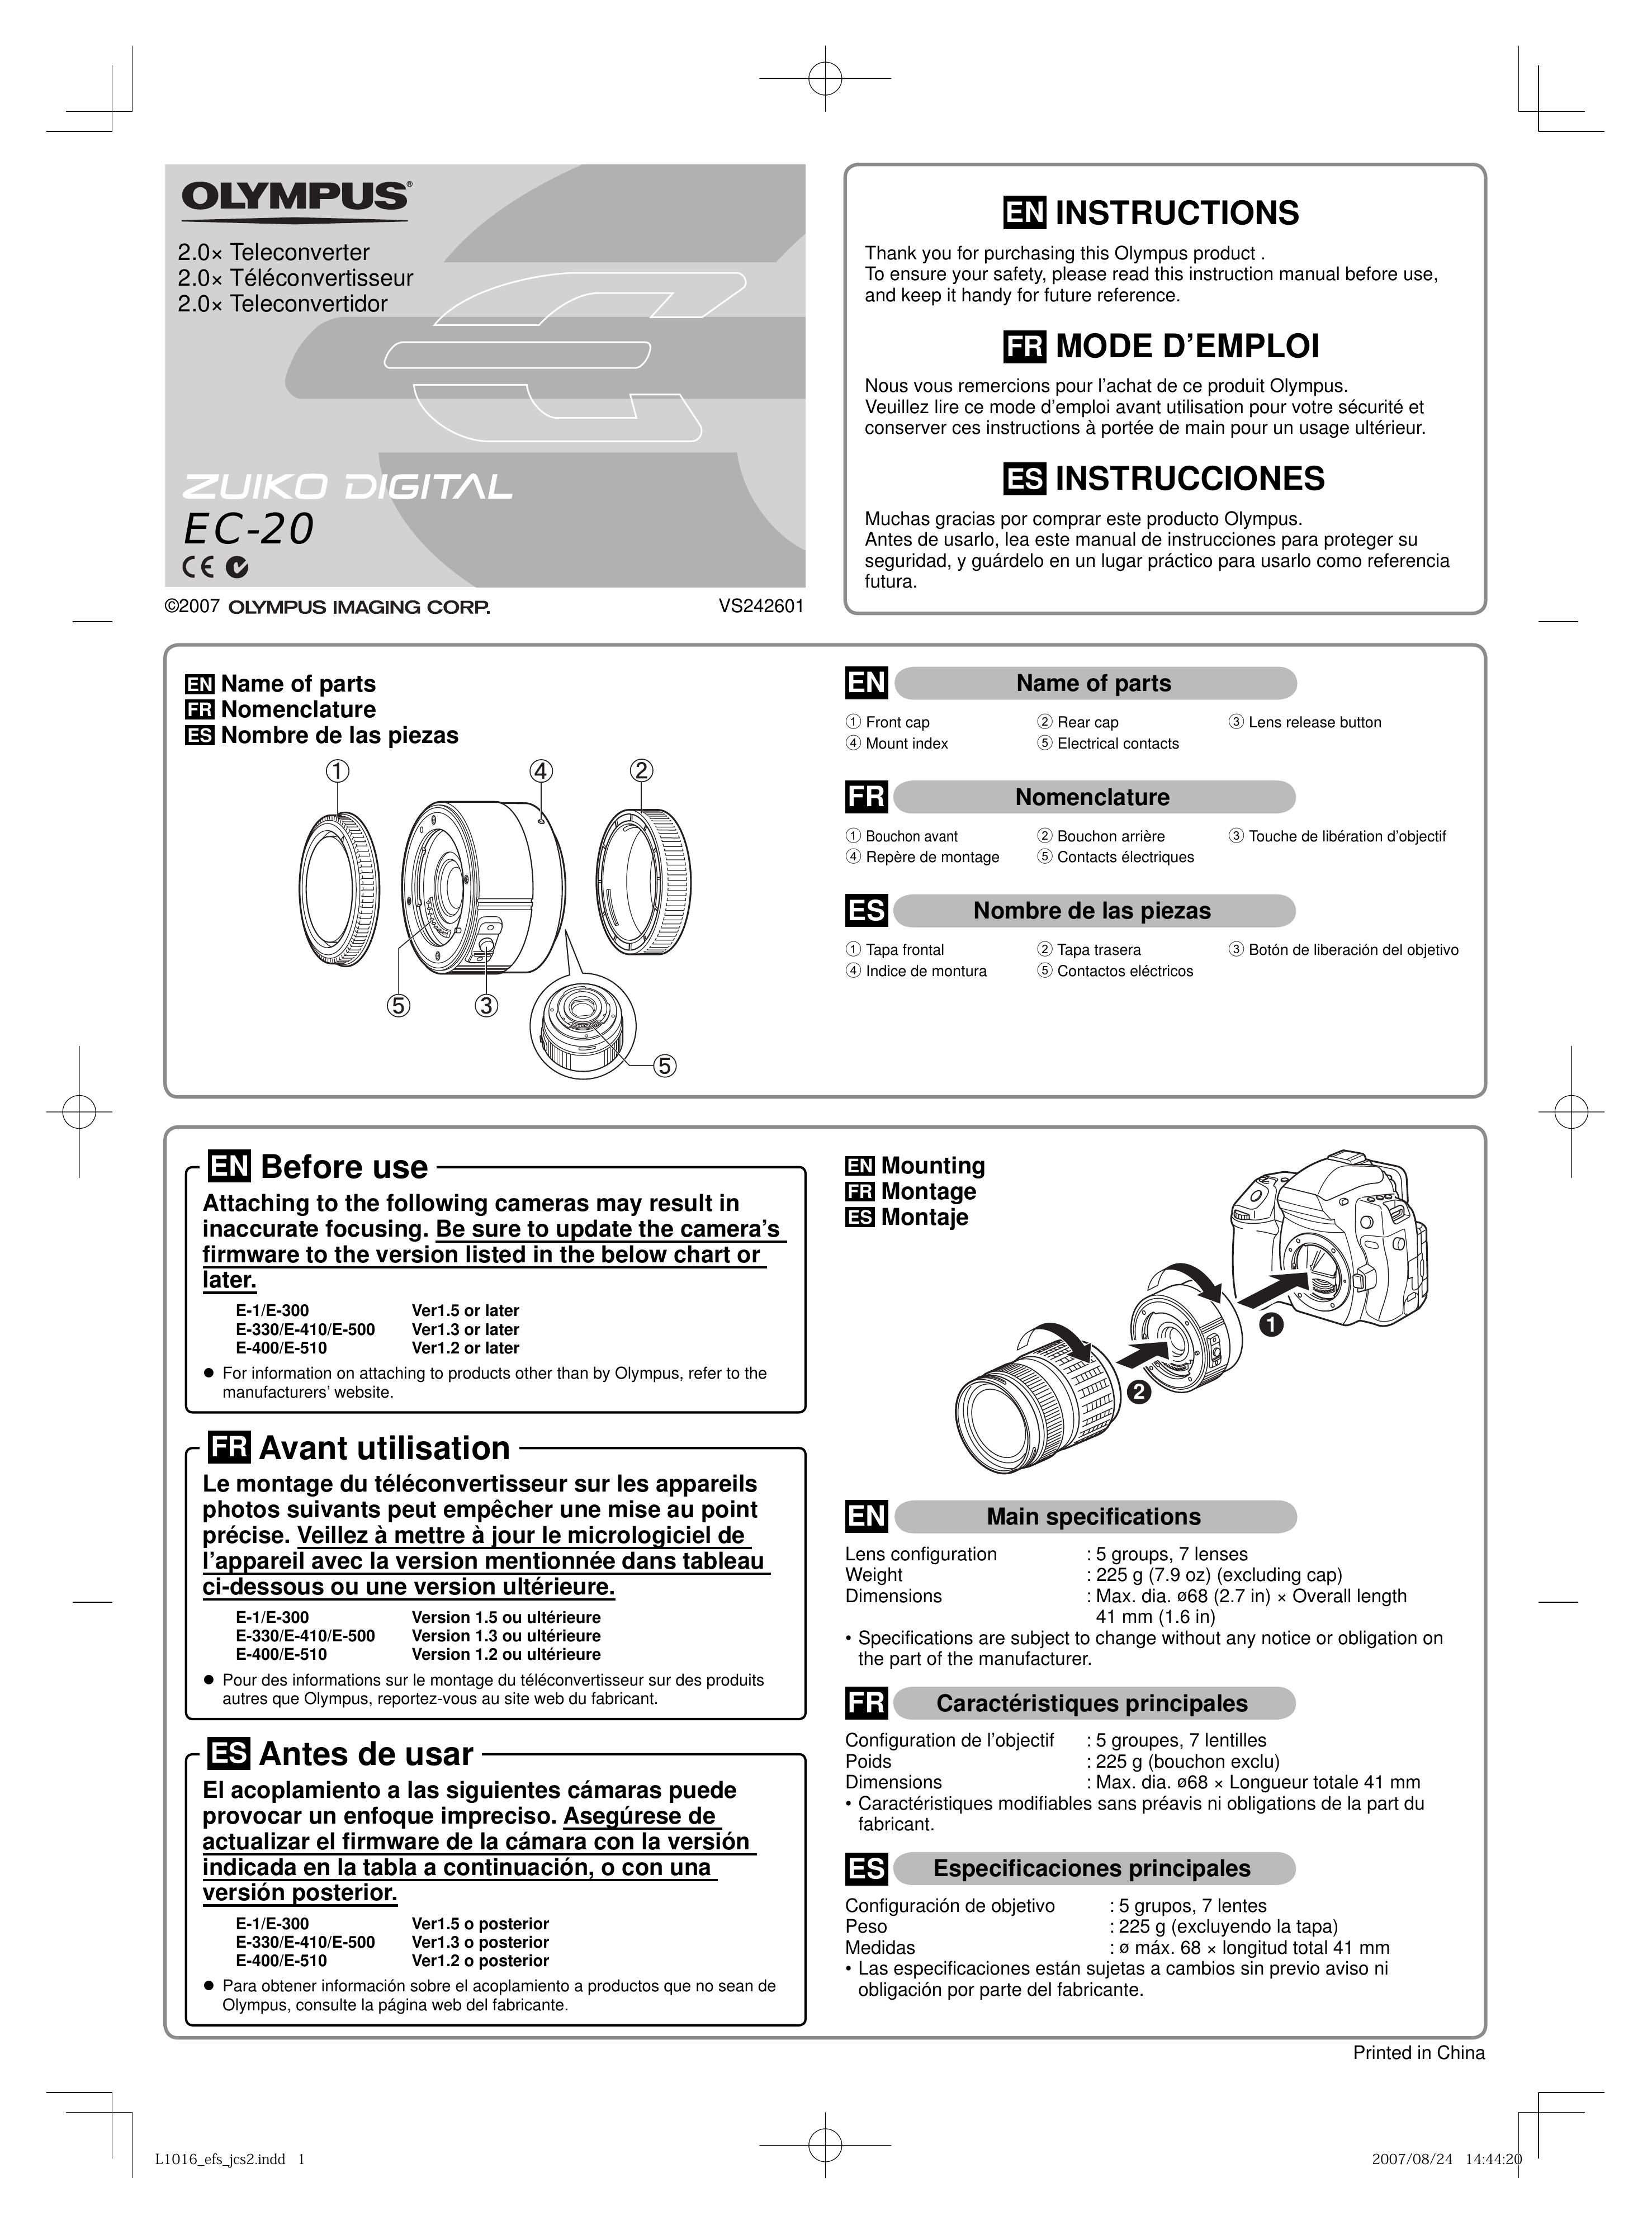 Olympus DIGITAL EC-20 Camera Lens User Manual